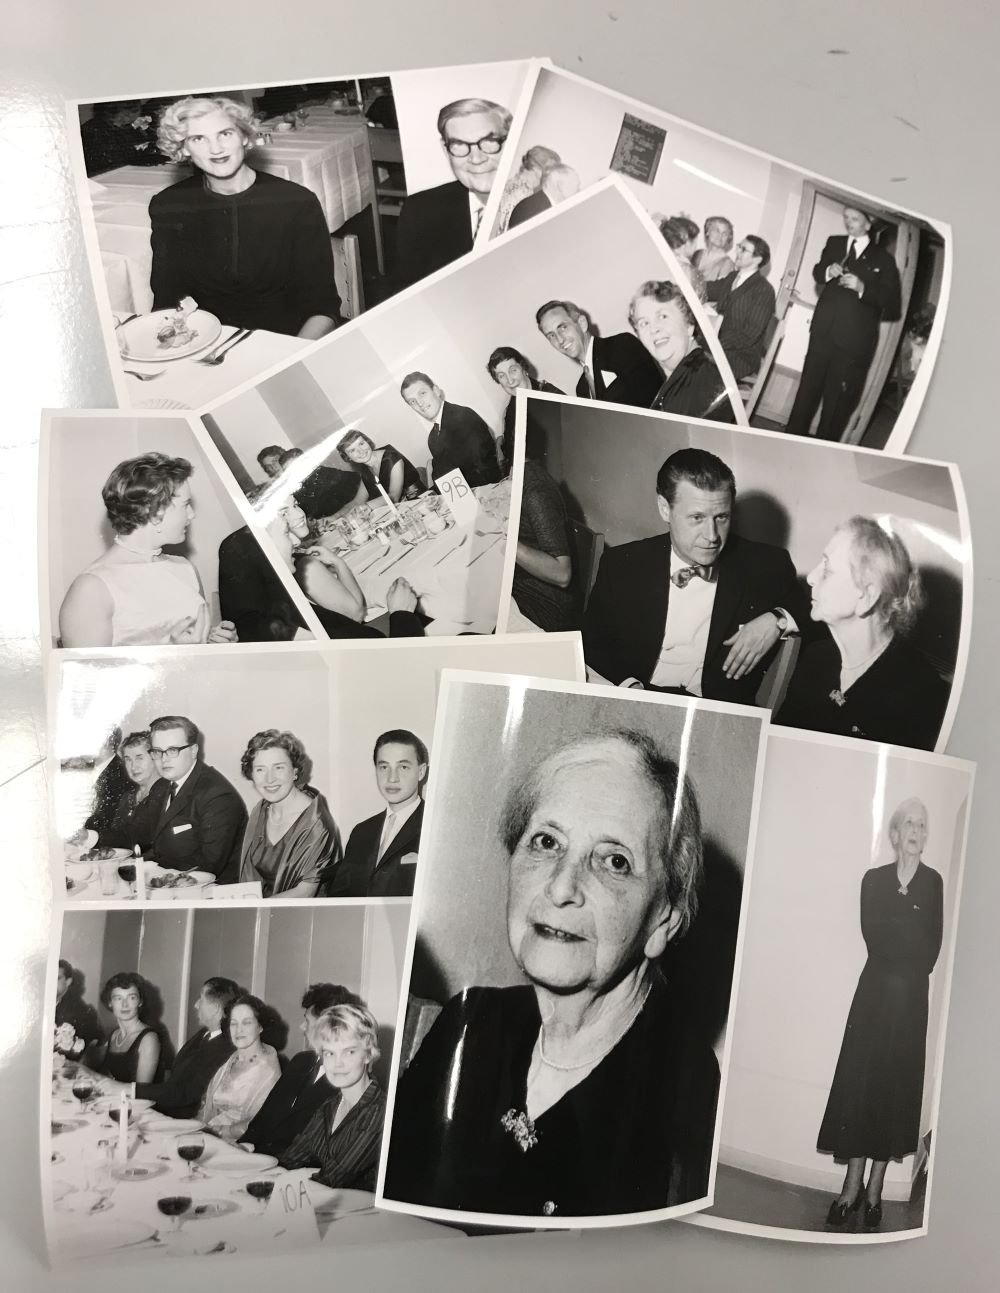 Nio utspridda svartvita fotografier med festklädda människor som delvis syns sittande vid middagsbord. Ett foto föreställer en ensam äldre kvinna i svart klänning. På ett annat foto syns hennes ansikte i närbild.